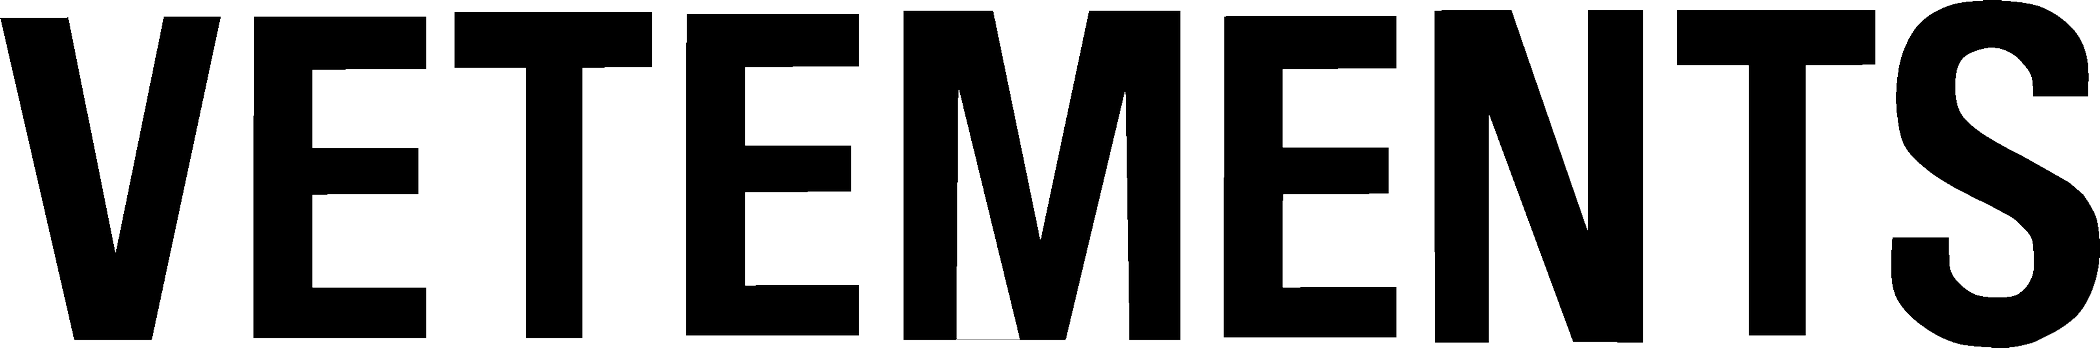 Vetements Logo - PNG Logo Vector Downloads (SVG, EPS)